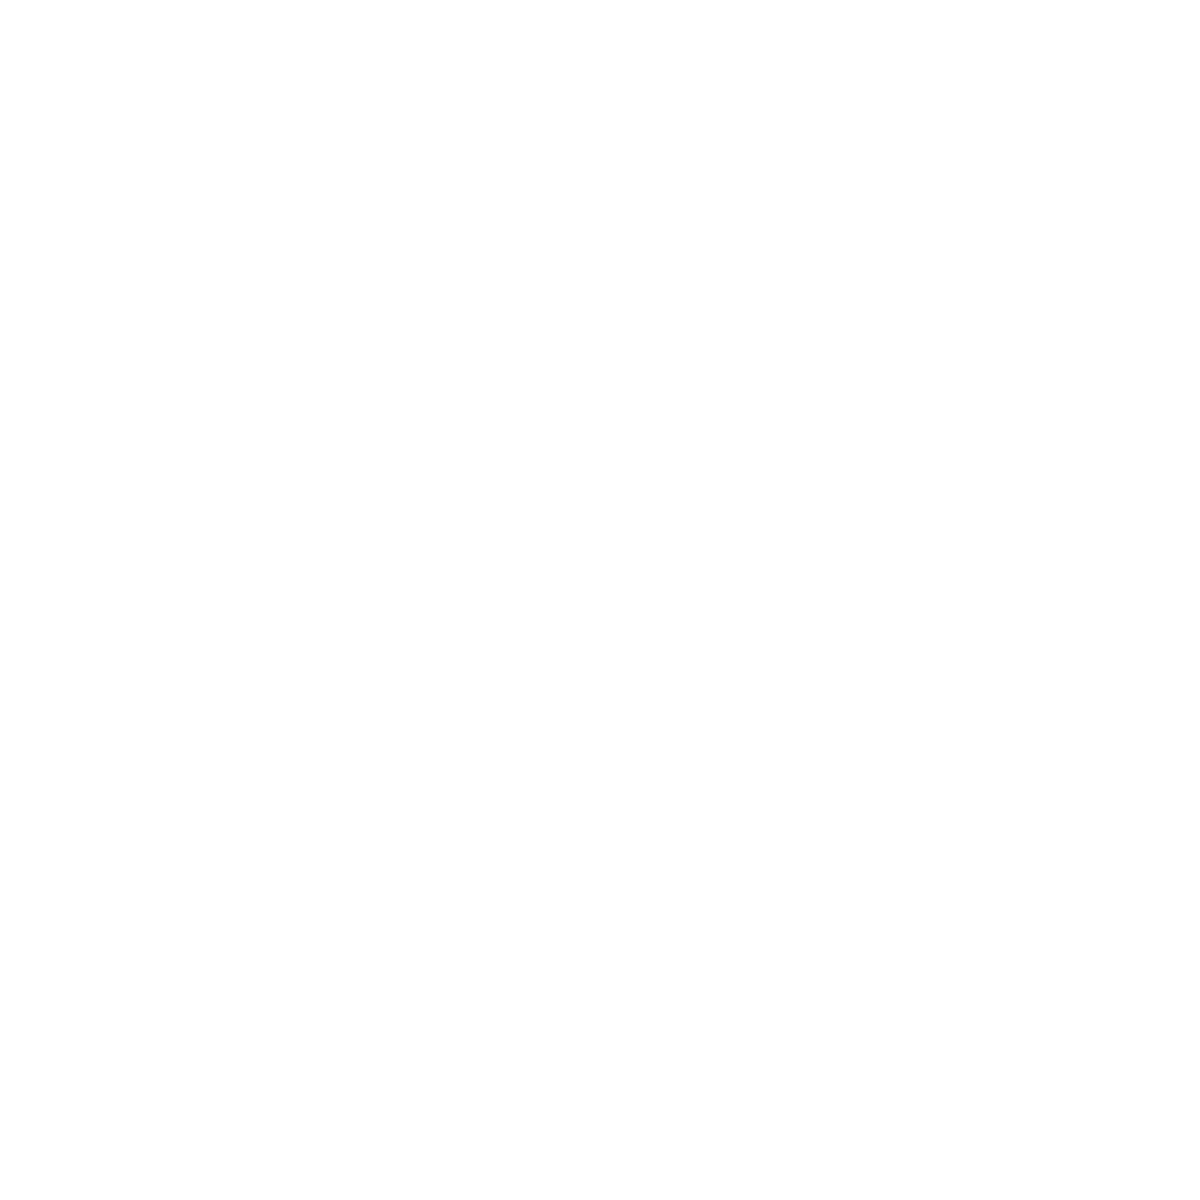 polyga inc -media-brand bigger v2 copy